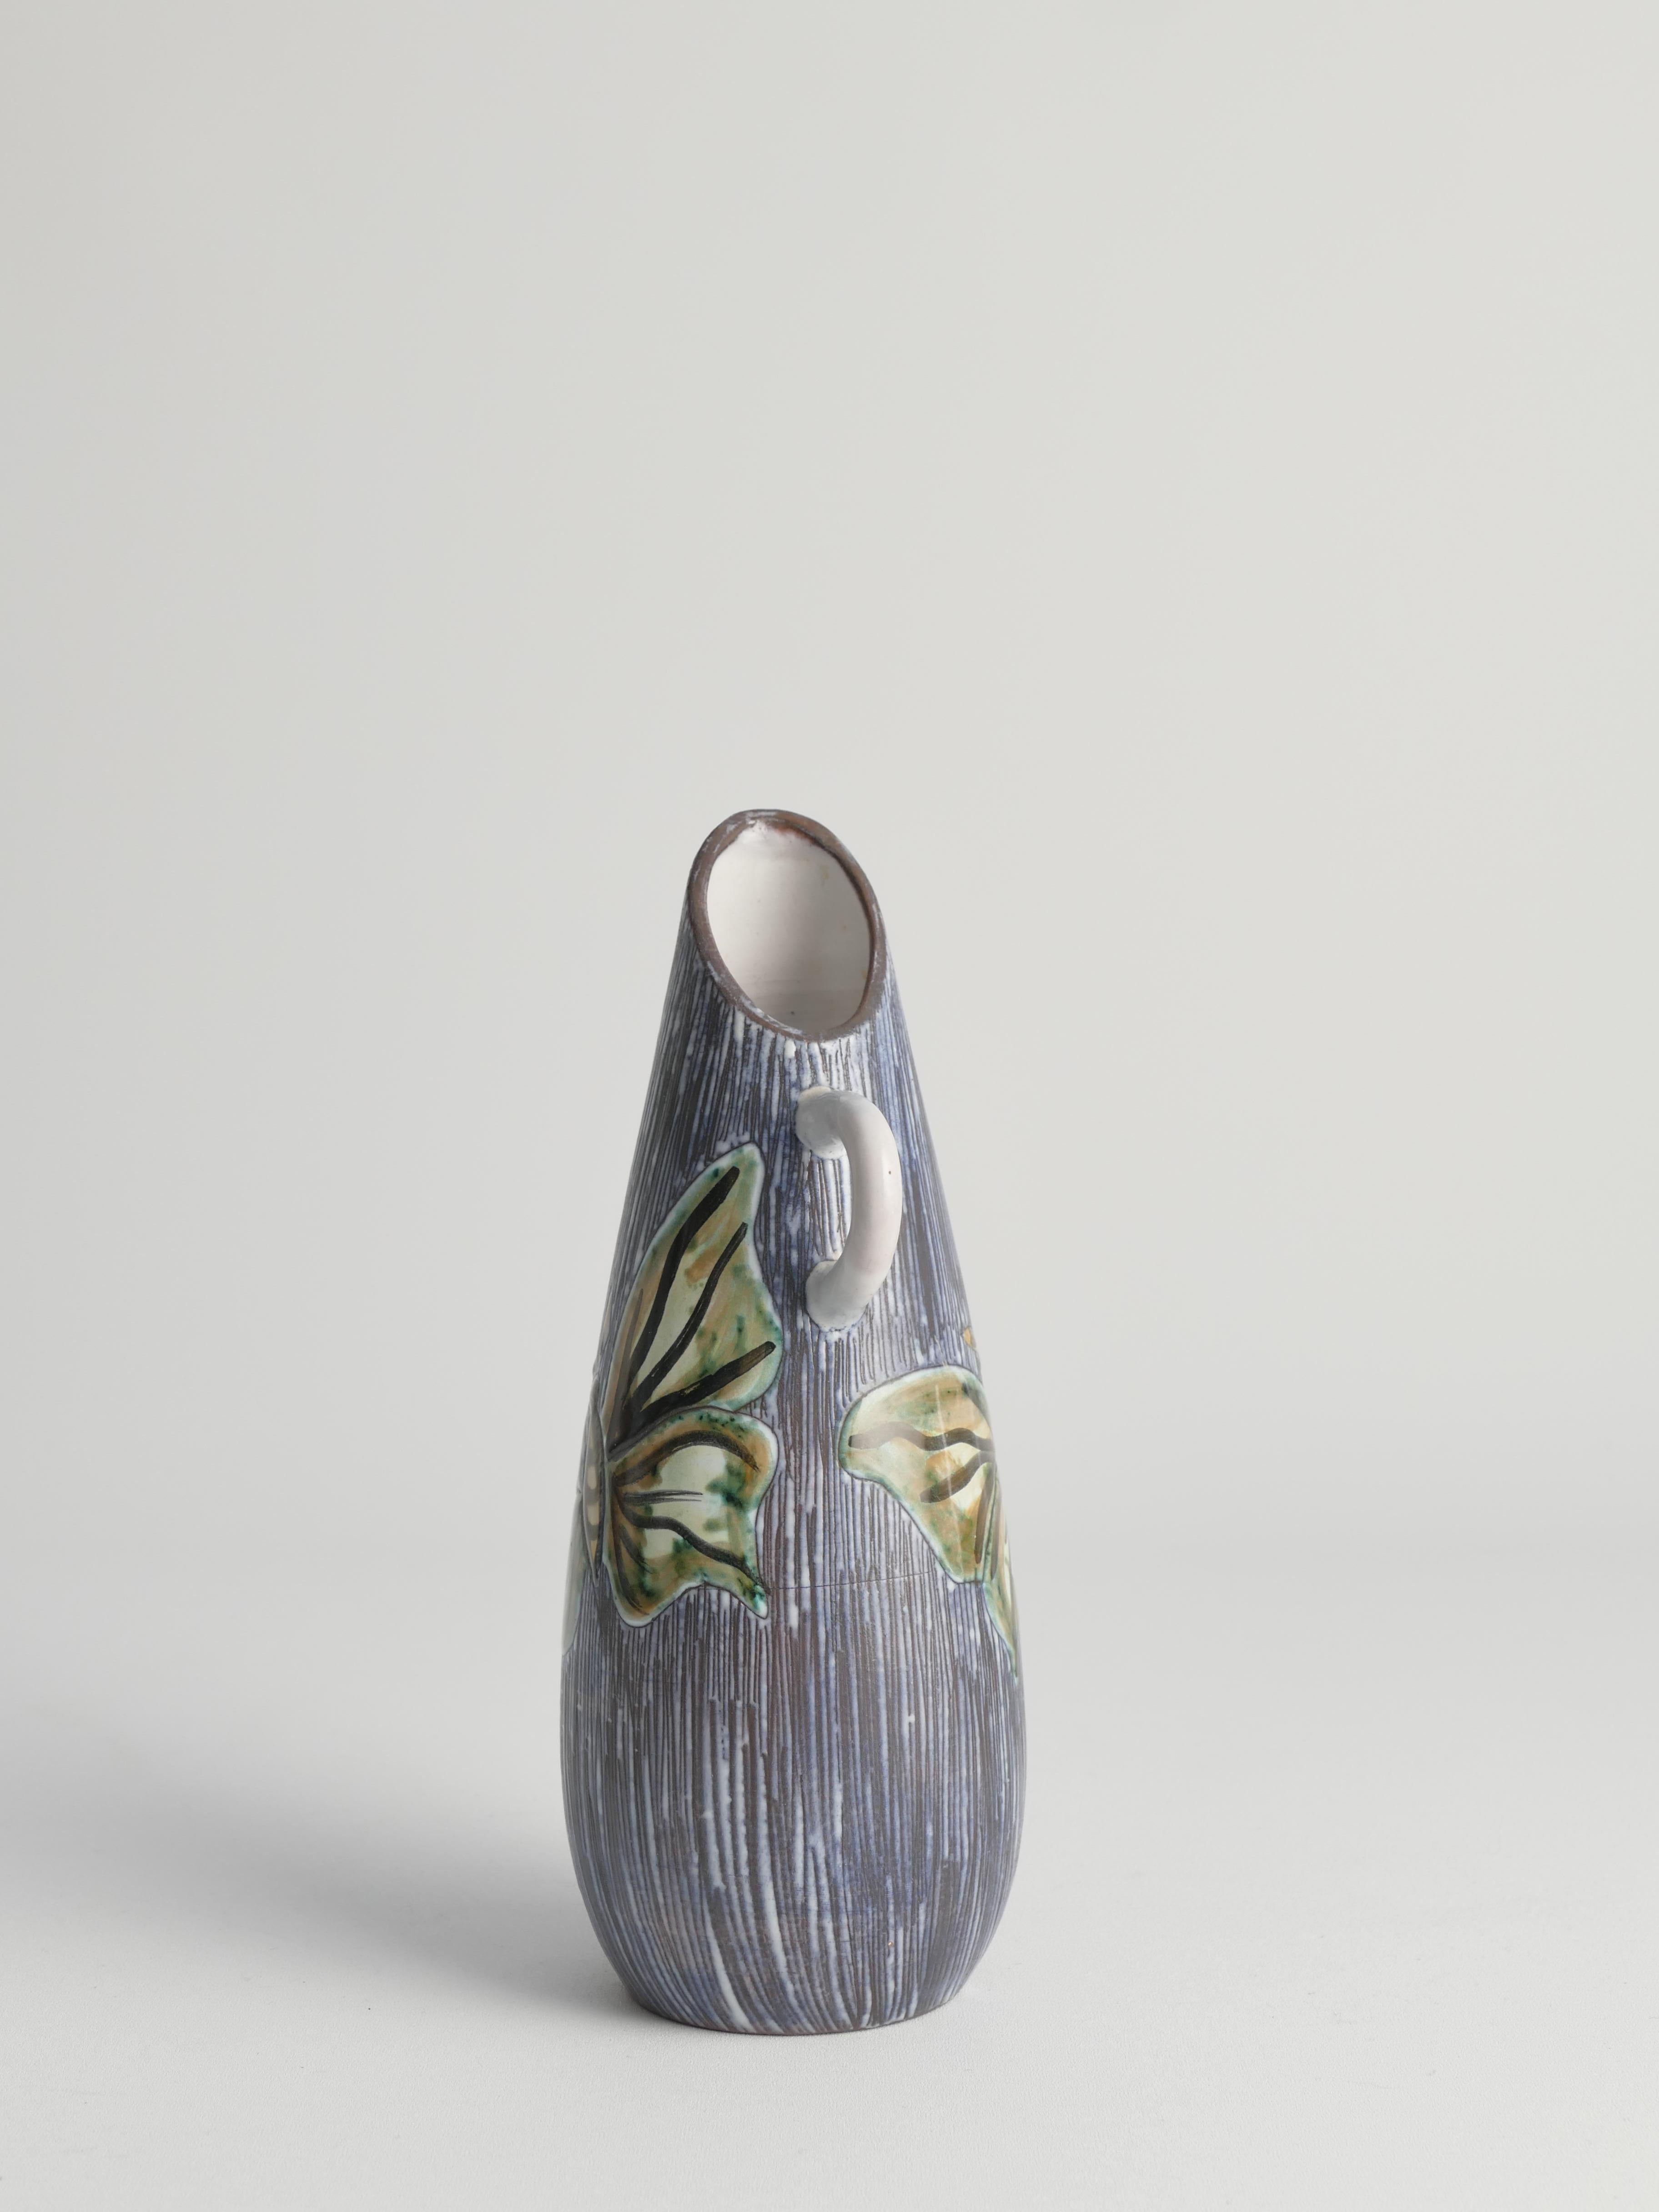 Vase en grès sculpté à la main du milieu du siècle avec technique de sgraffite et papillons, Suède, années 1950 

Fabriqué dans les années 1950, ce vase en grès sculpté et décoré à la main provient probablement d'Alingsås, en Suède. Le vase présente